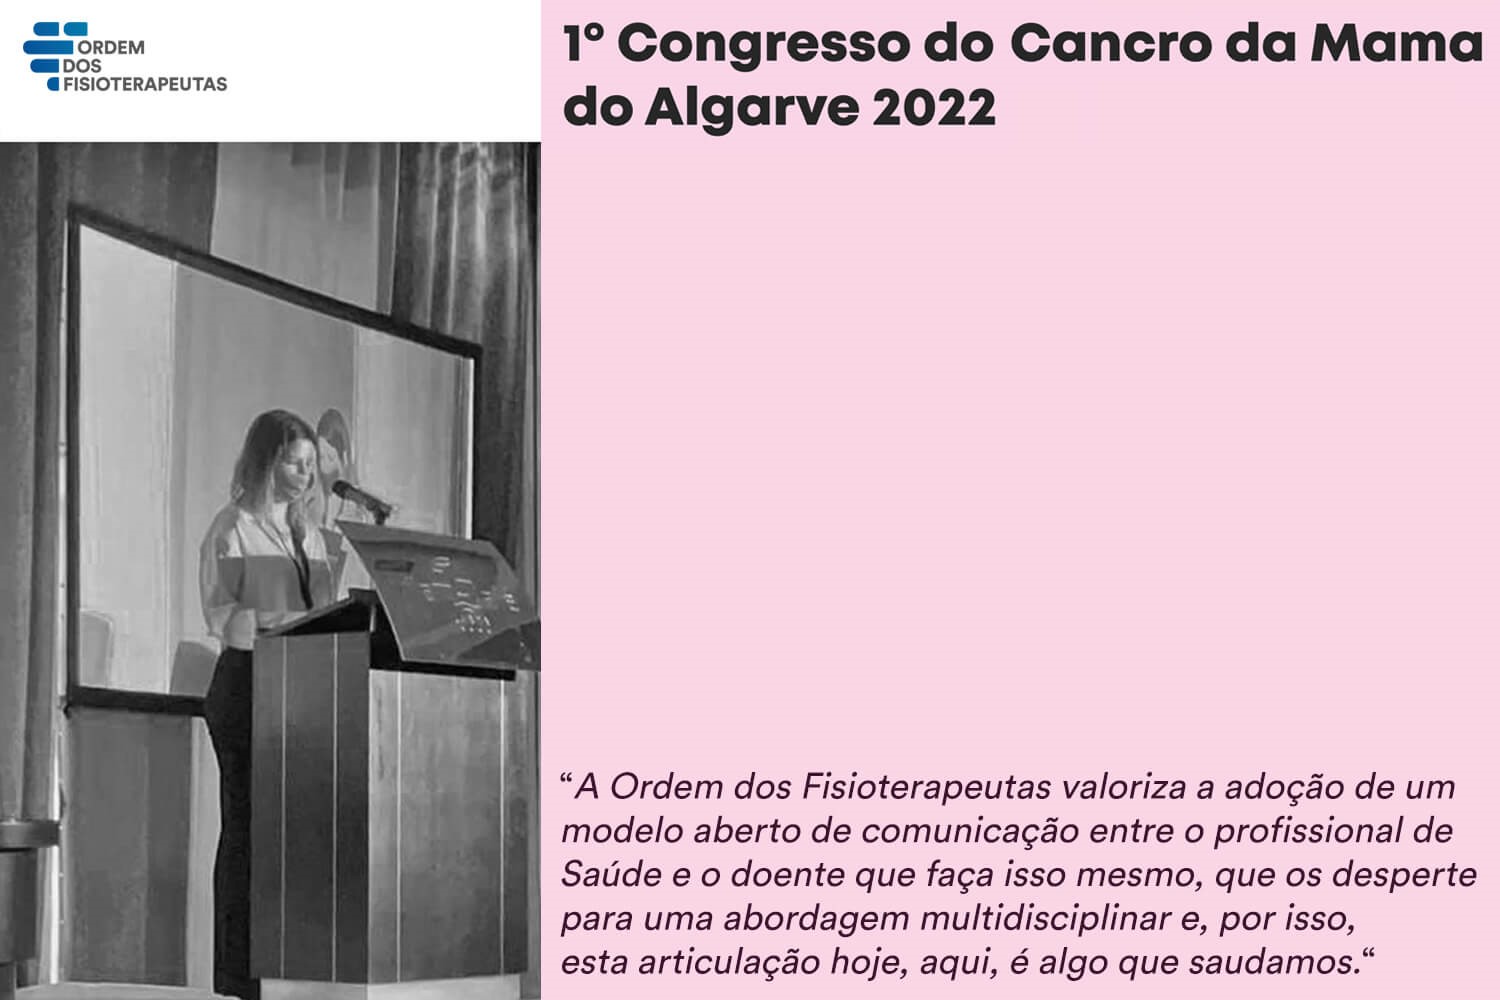 1º Congresso do Cancro da Mama do Algarve 2022